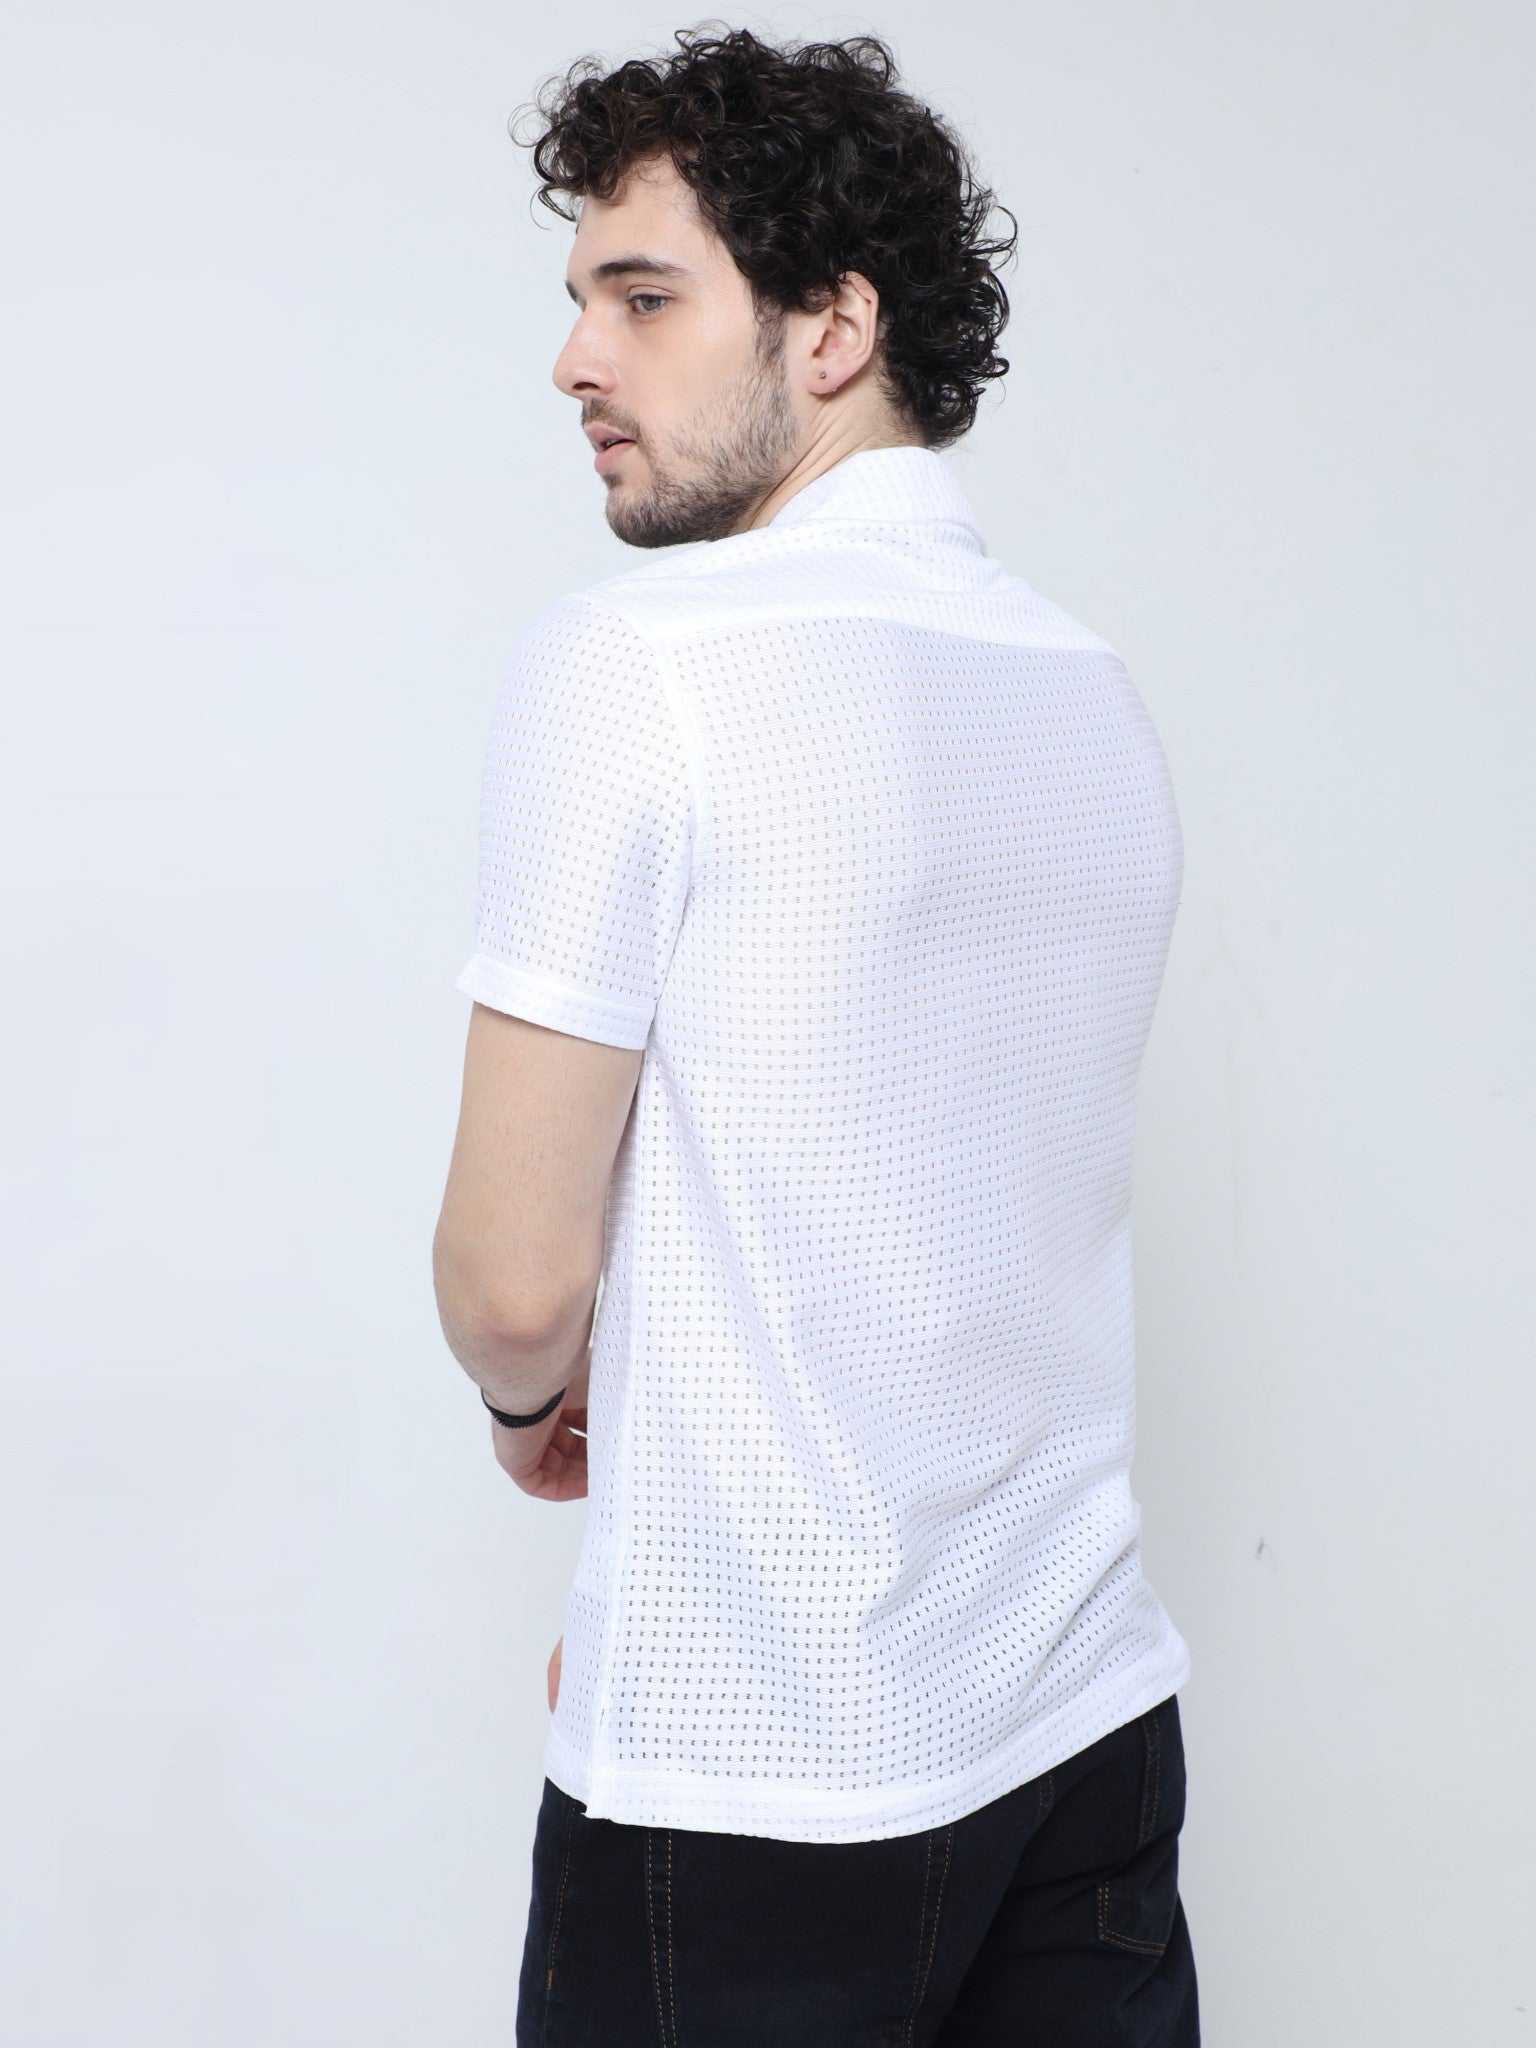 Mesh Crochet White Shirt for Men